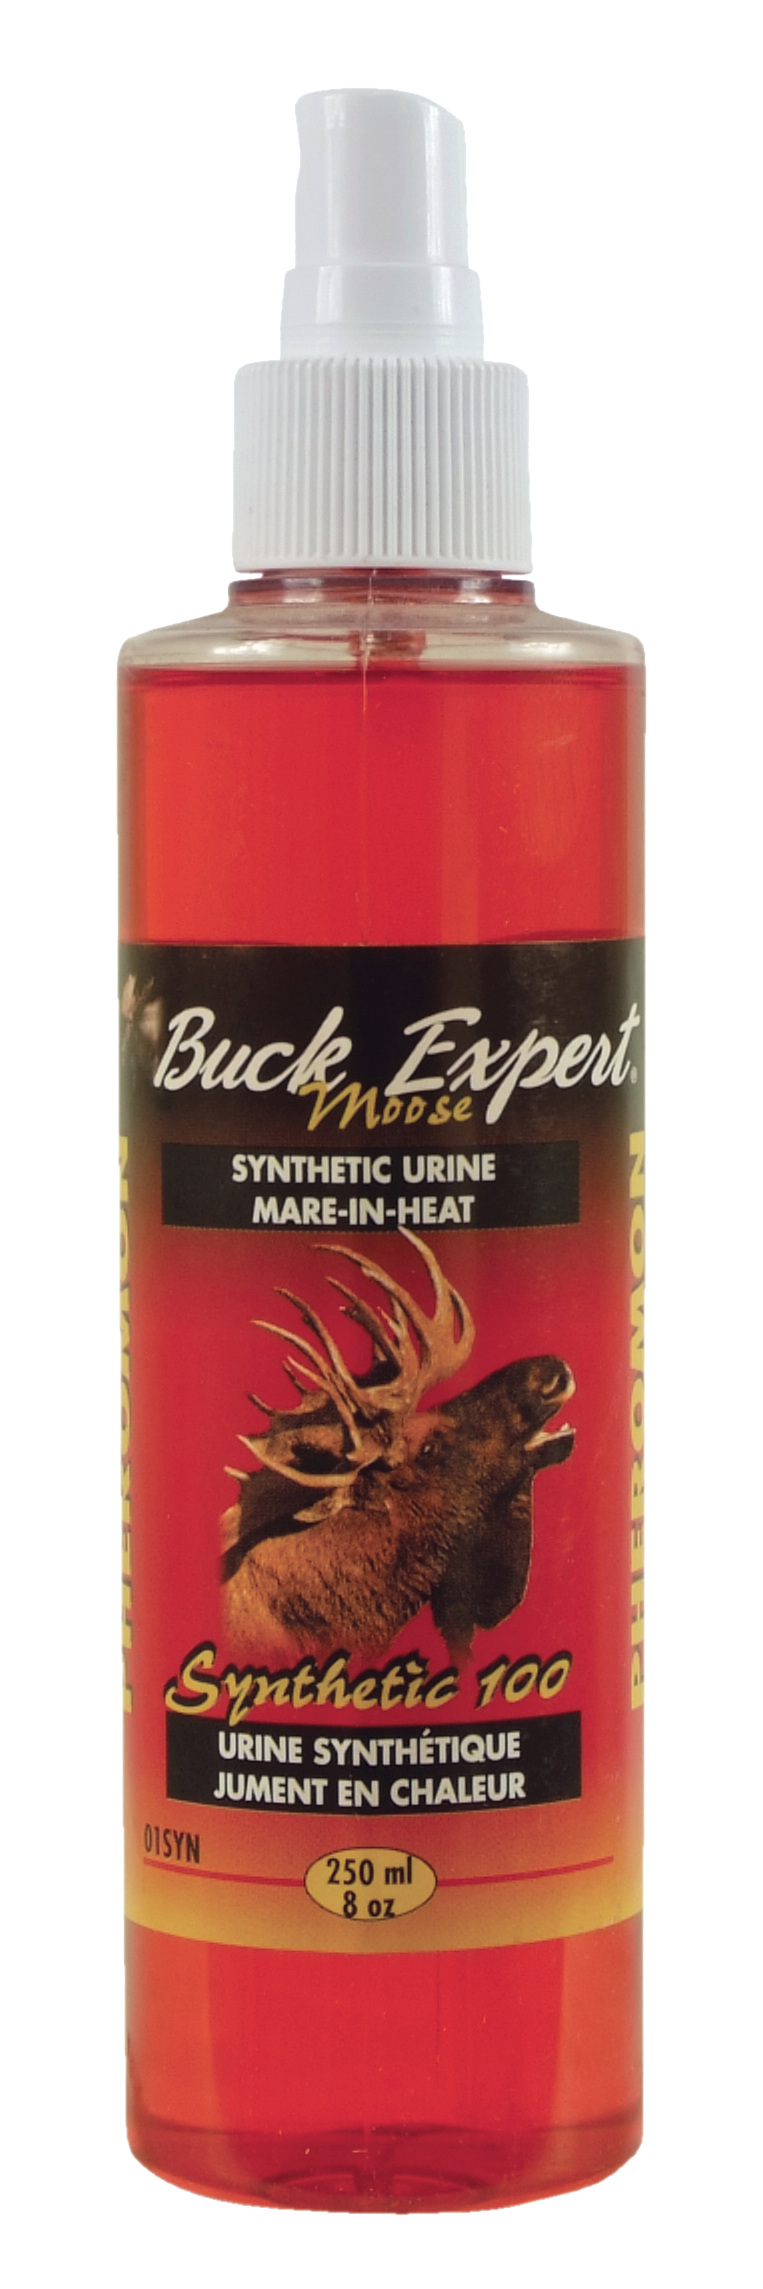 Buck Expert mare's urine in heat